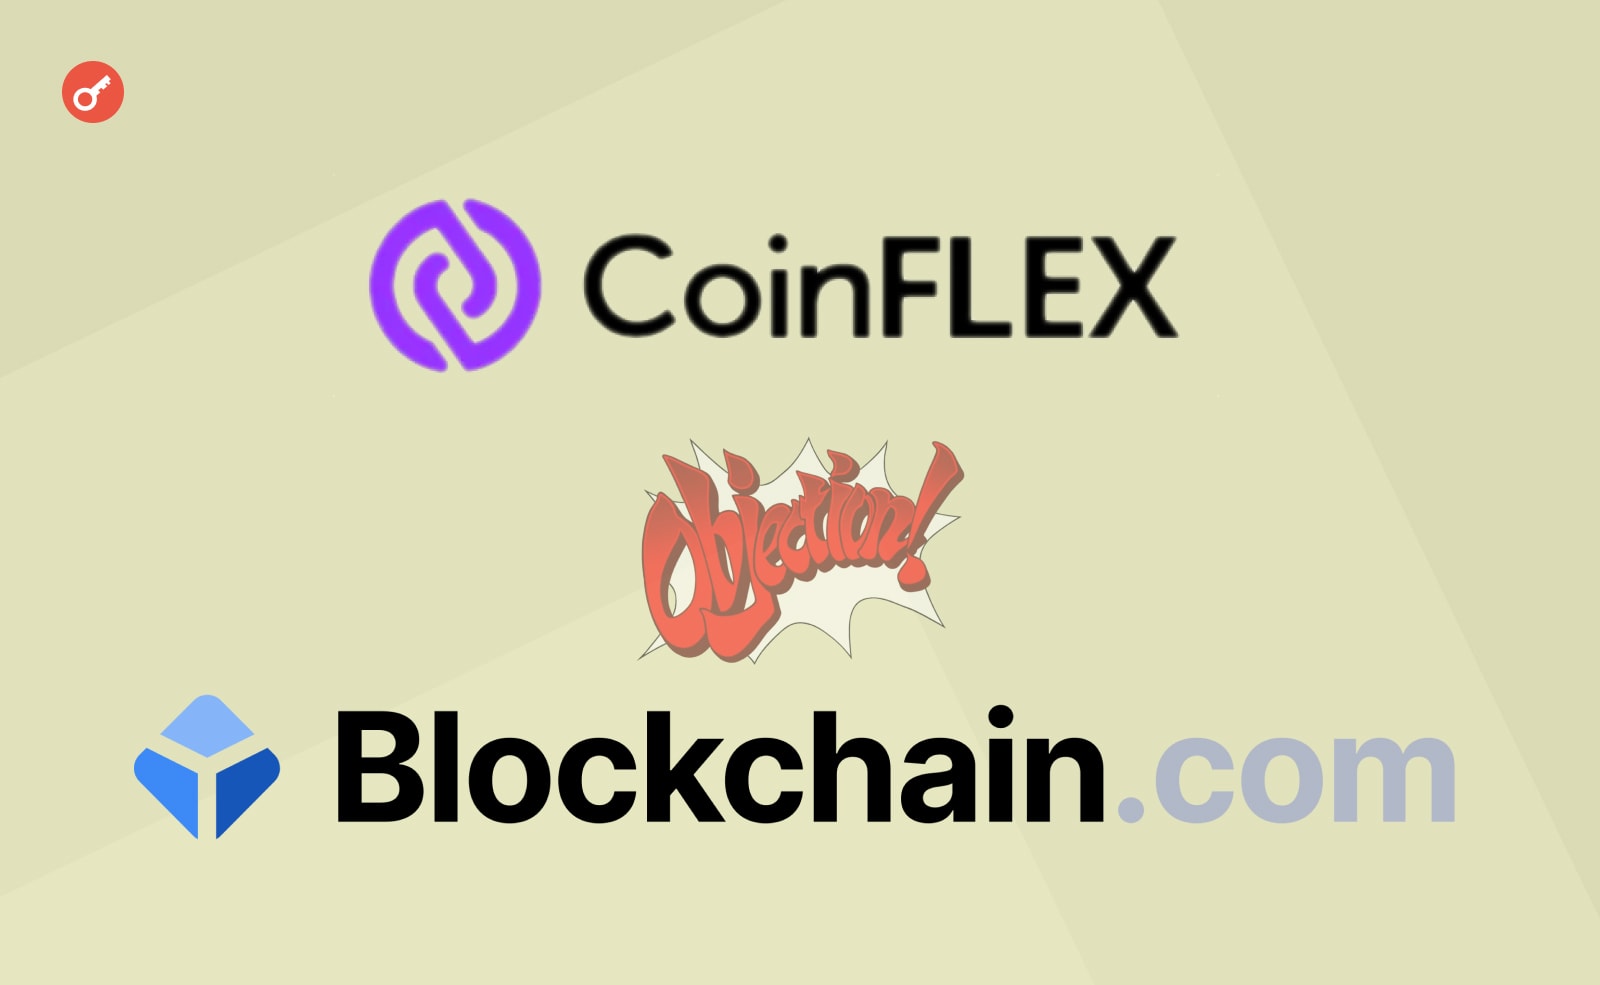 CoinFLEX утверждает, что криптовалютная биржа Blockchain.com заняла у нее 3 млн FLEX в 2022 году. Теперь компания требует в срочном порядке погасить займ, в противном случае должника ждет судебный процесс.